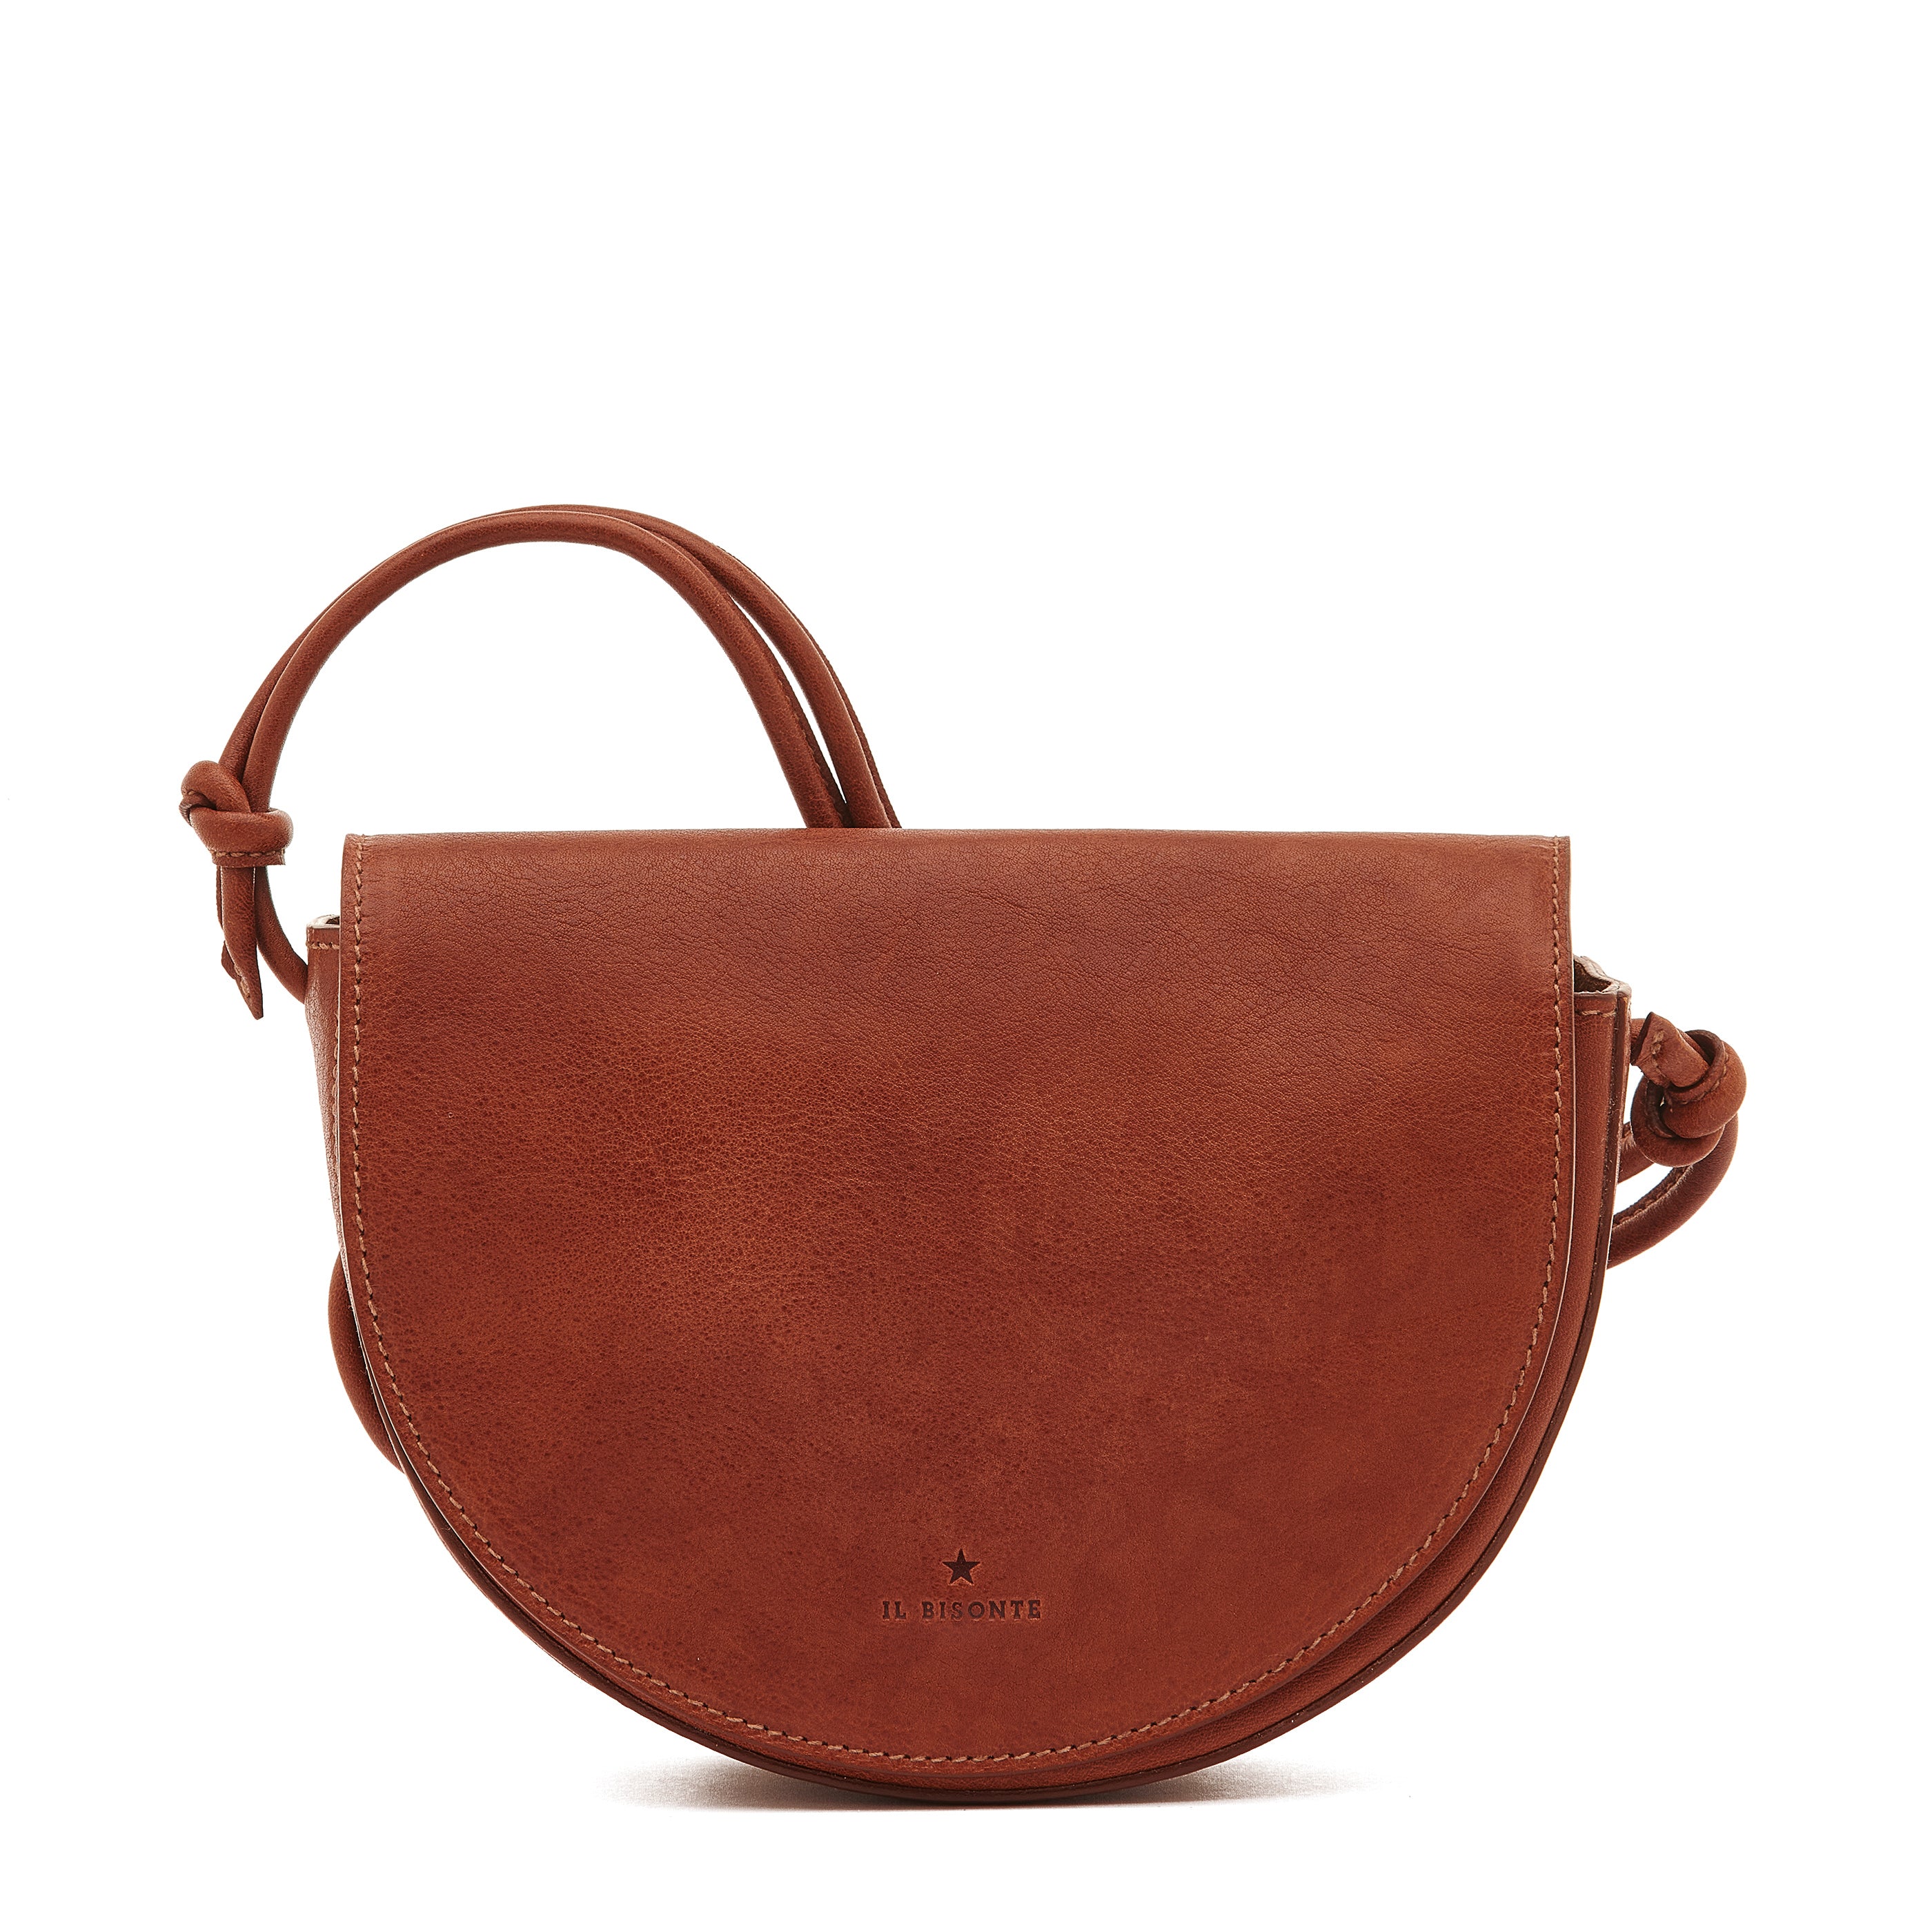 Il Bisonte Chestnut Leather Hobo Bag